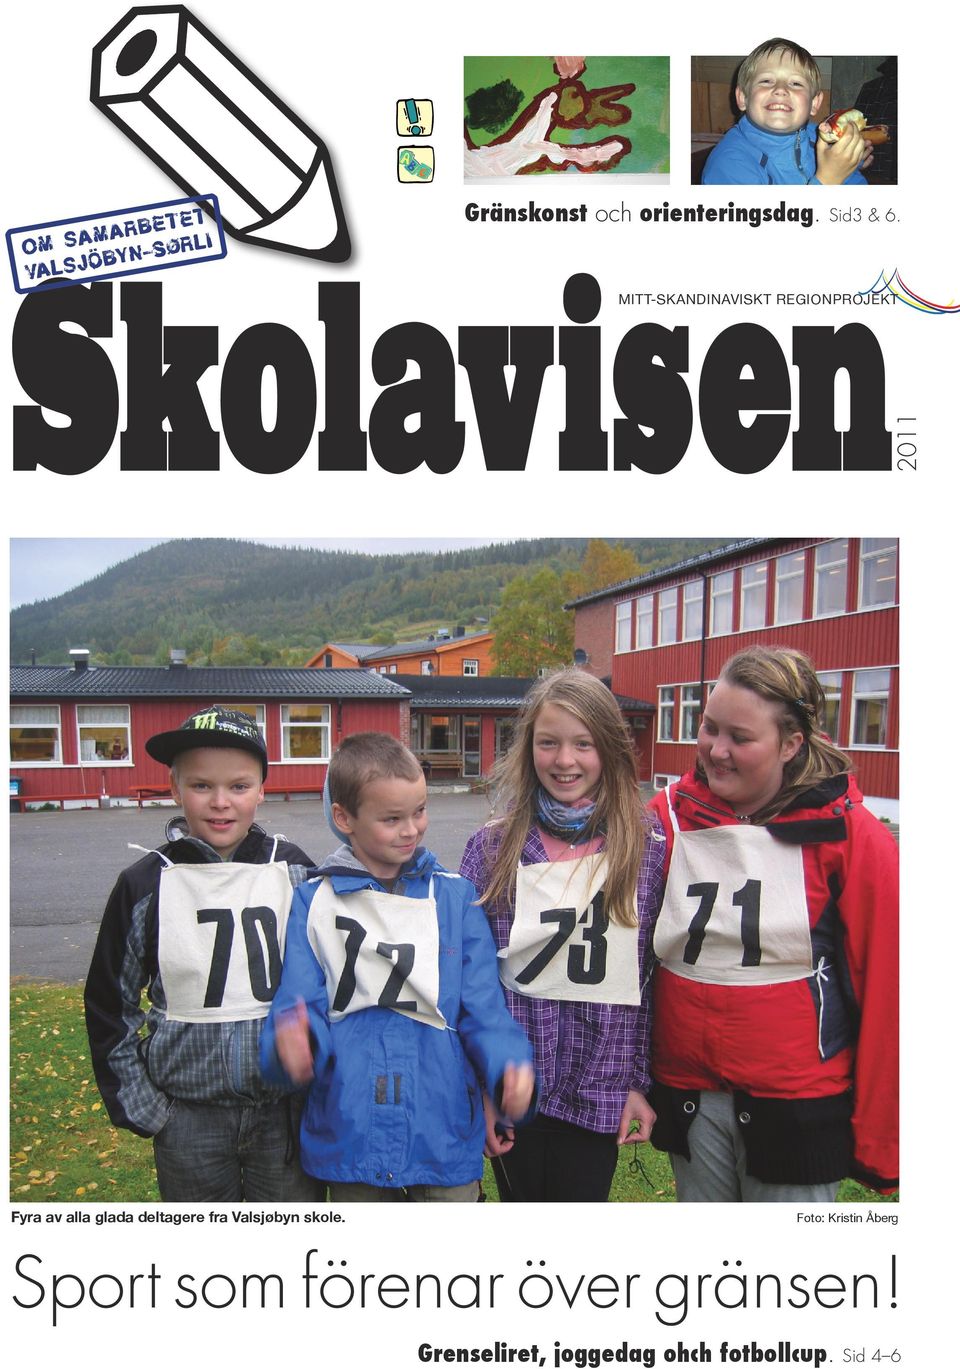 Sørli 2011 Fyra av alla glada deltagere fra Valsjøbyn skole.